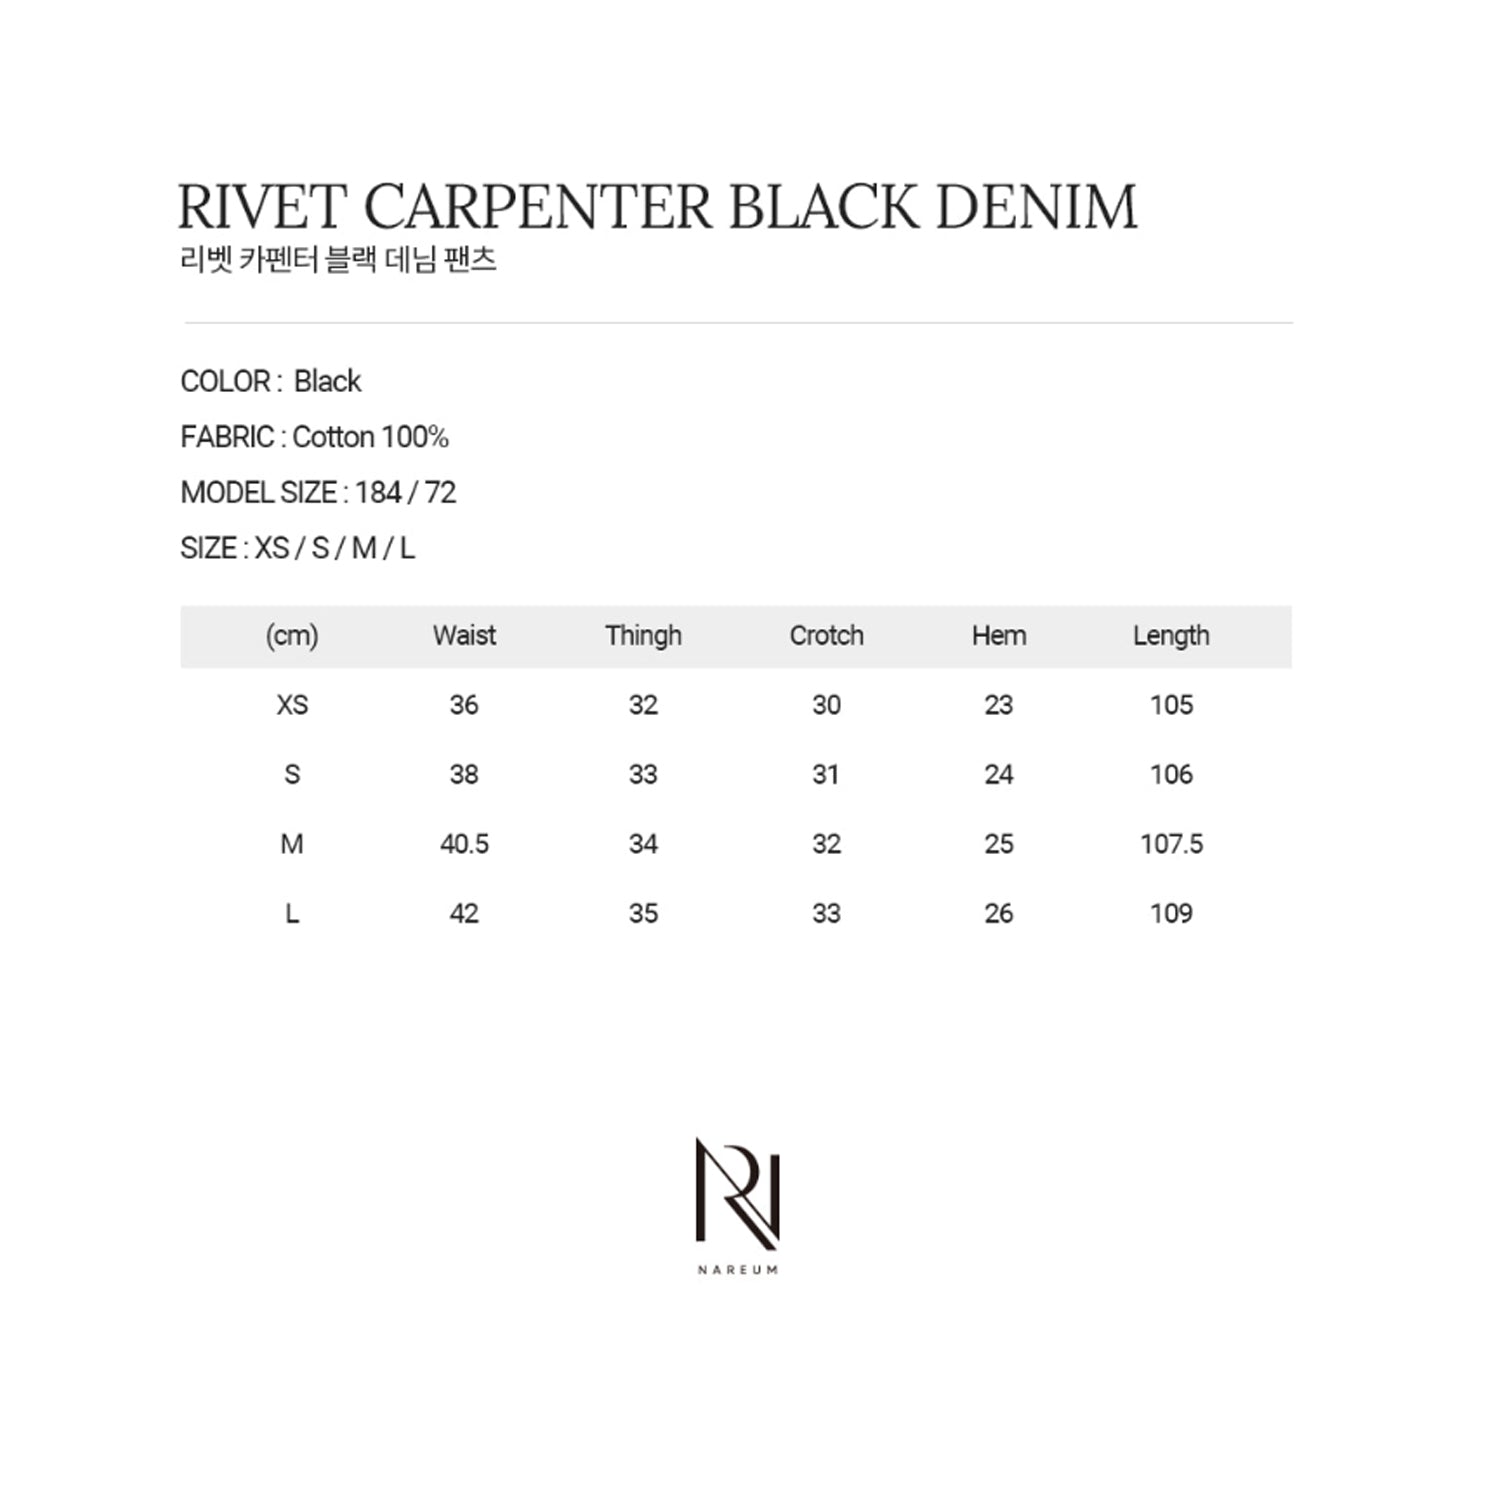 RIVET CARPENTER BLACK DENIM